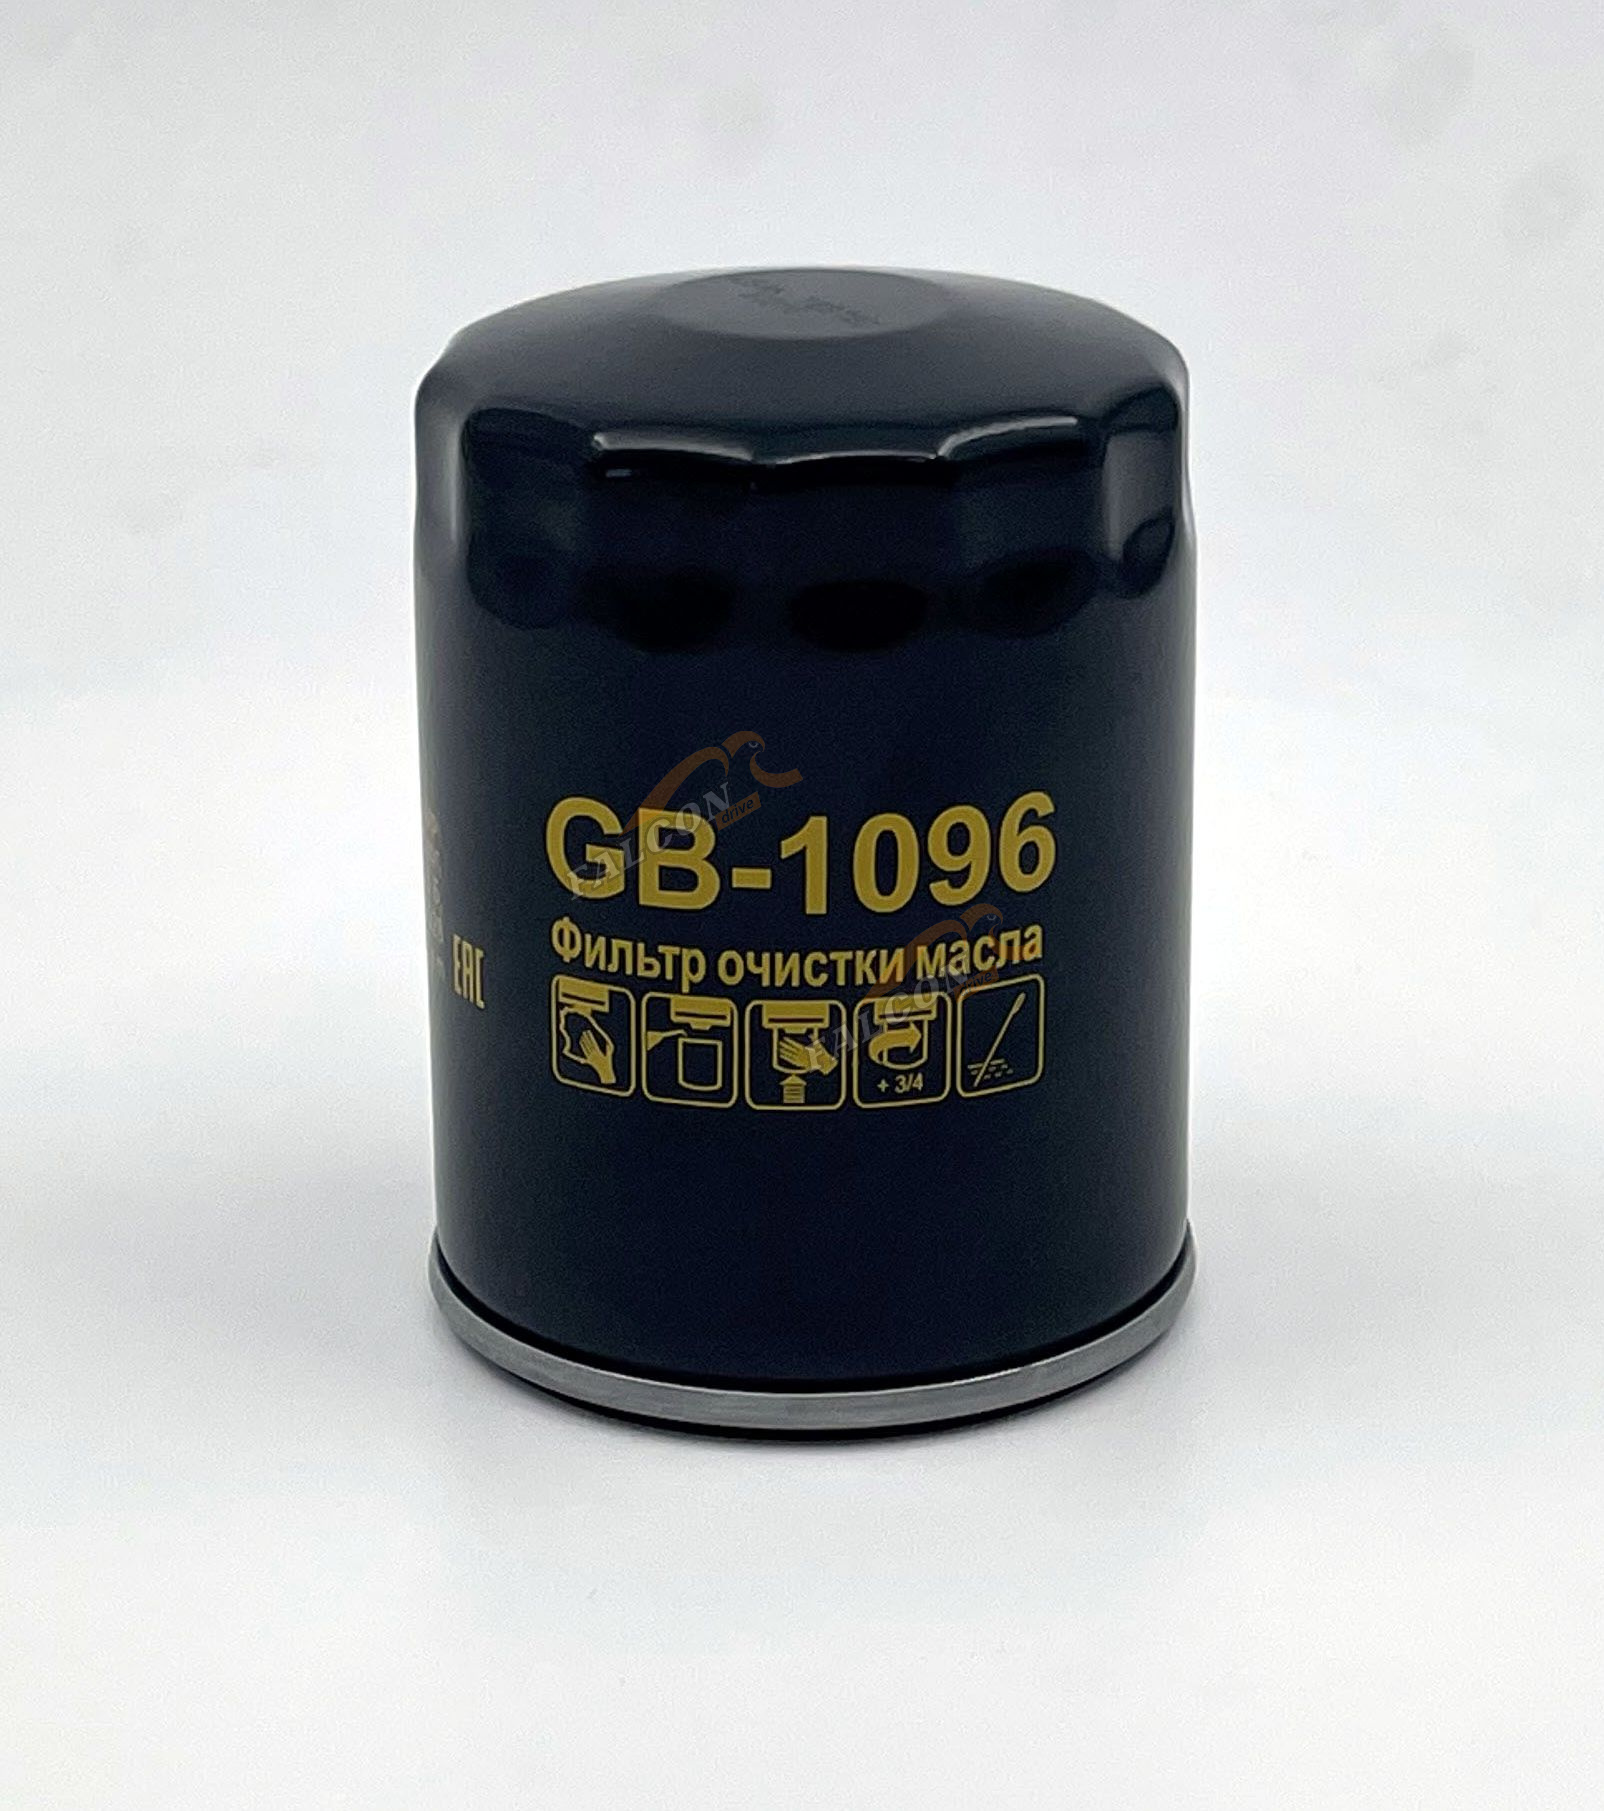 Фильтр масляный (БИГ) GB-1096 OPEL Antara CHEVROLET Captiva 3.2 V6 06--